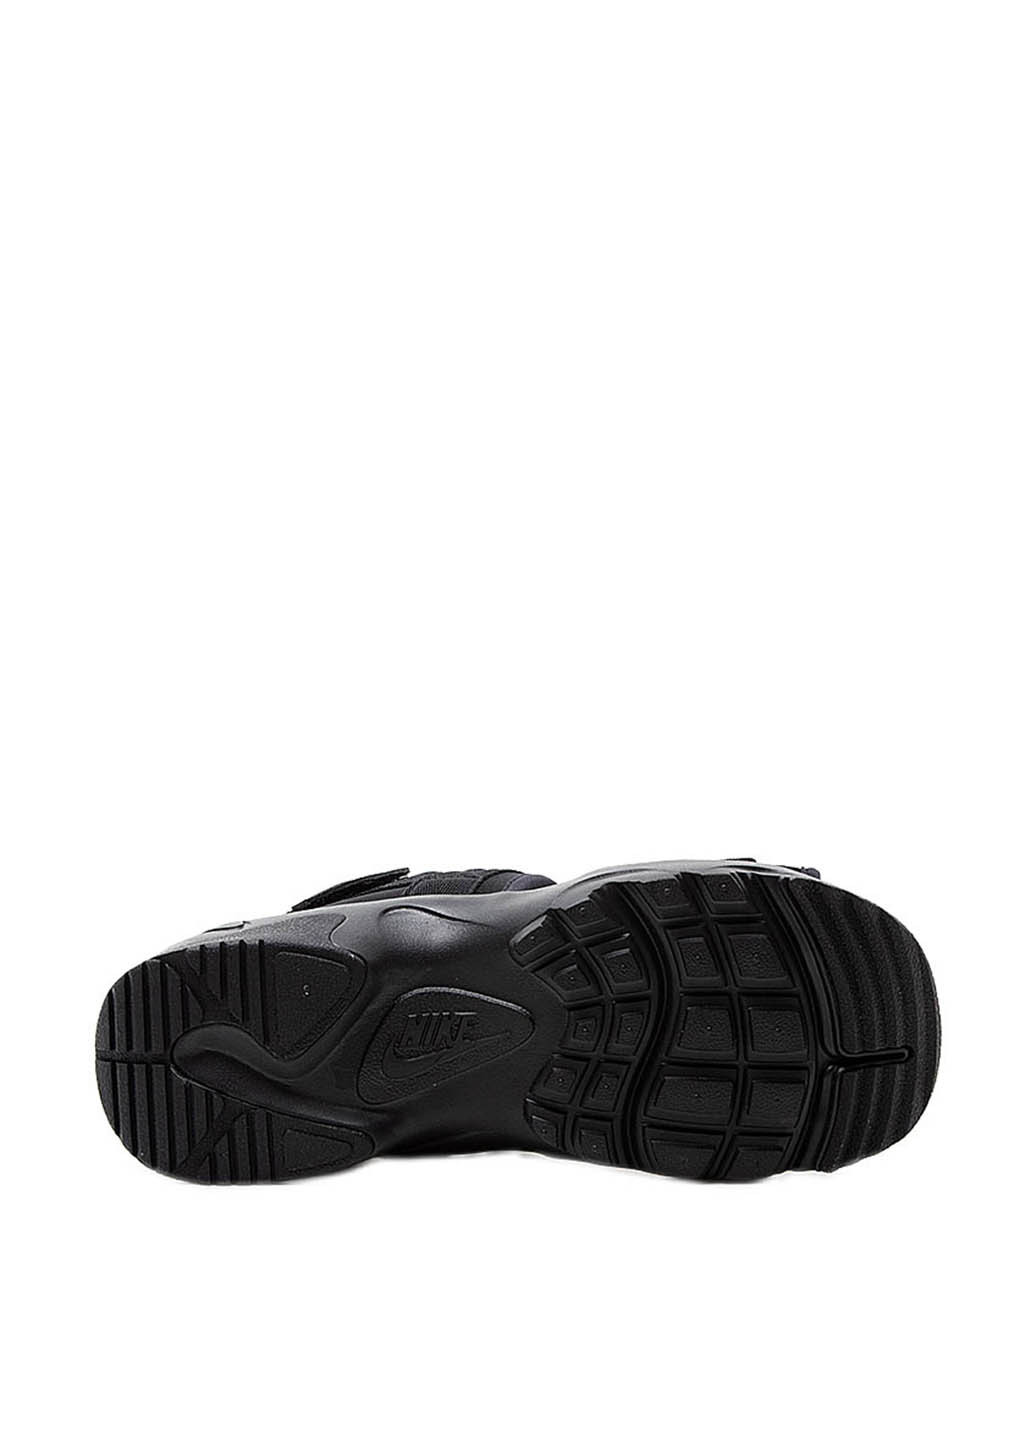 Черные босоножки Nike на липучке с логотипом, с тиснением